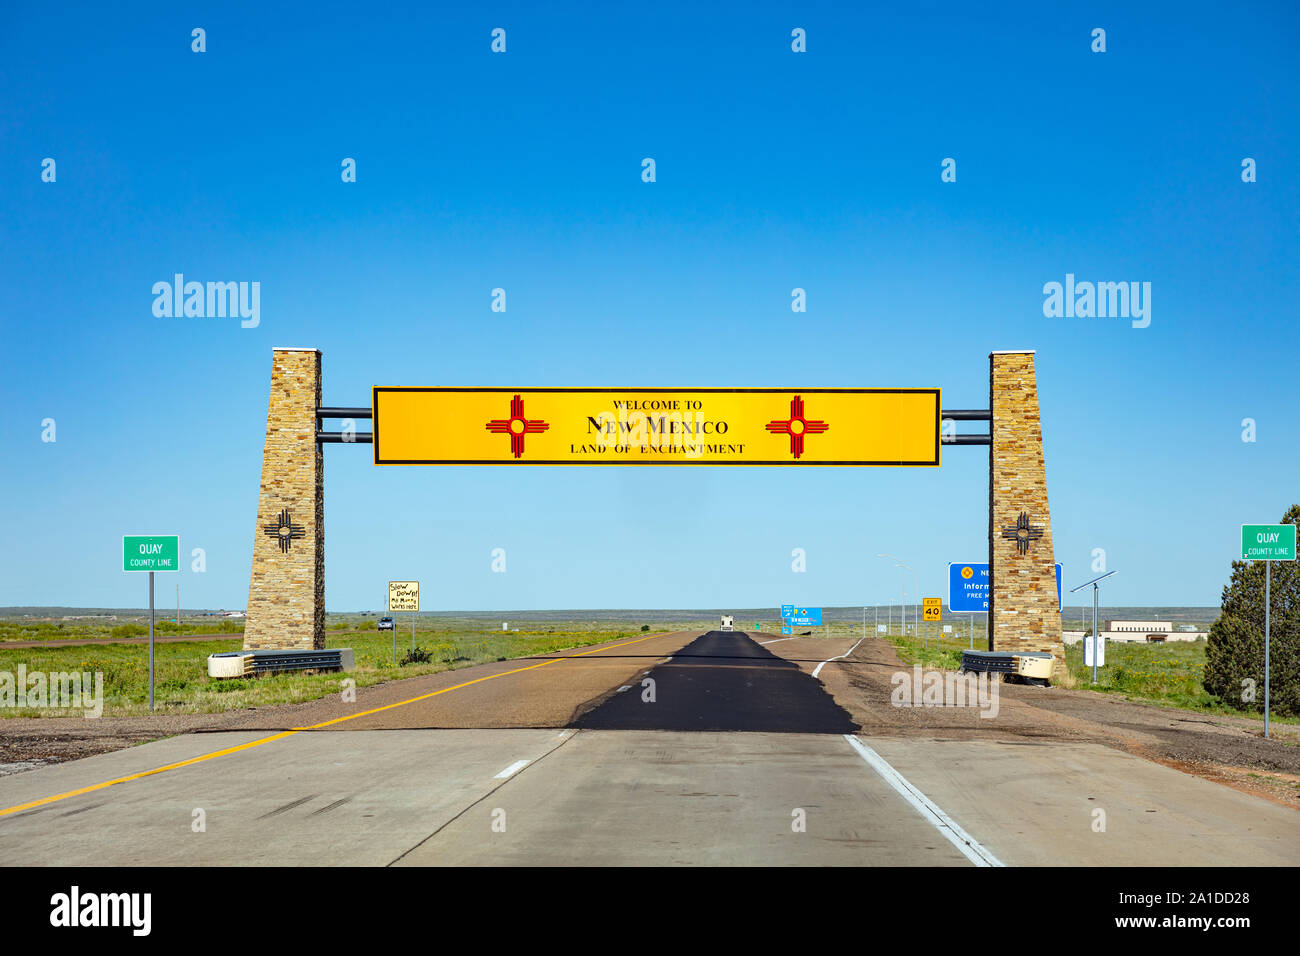 Nouveau Mexique l'autoroute, USA. 29 mai 2019 : Bienvenue au Nouveau Mexique roadsign panneau sur l'autoroute, bleu ciel clair Banque D'Images